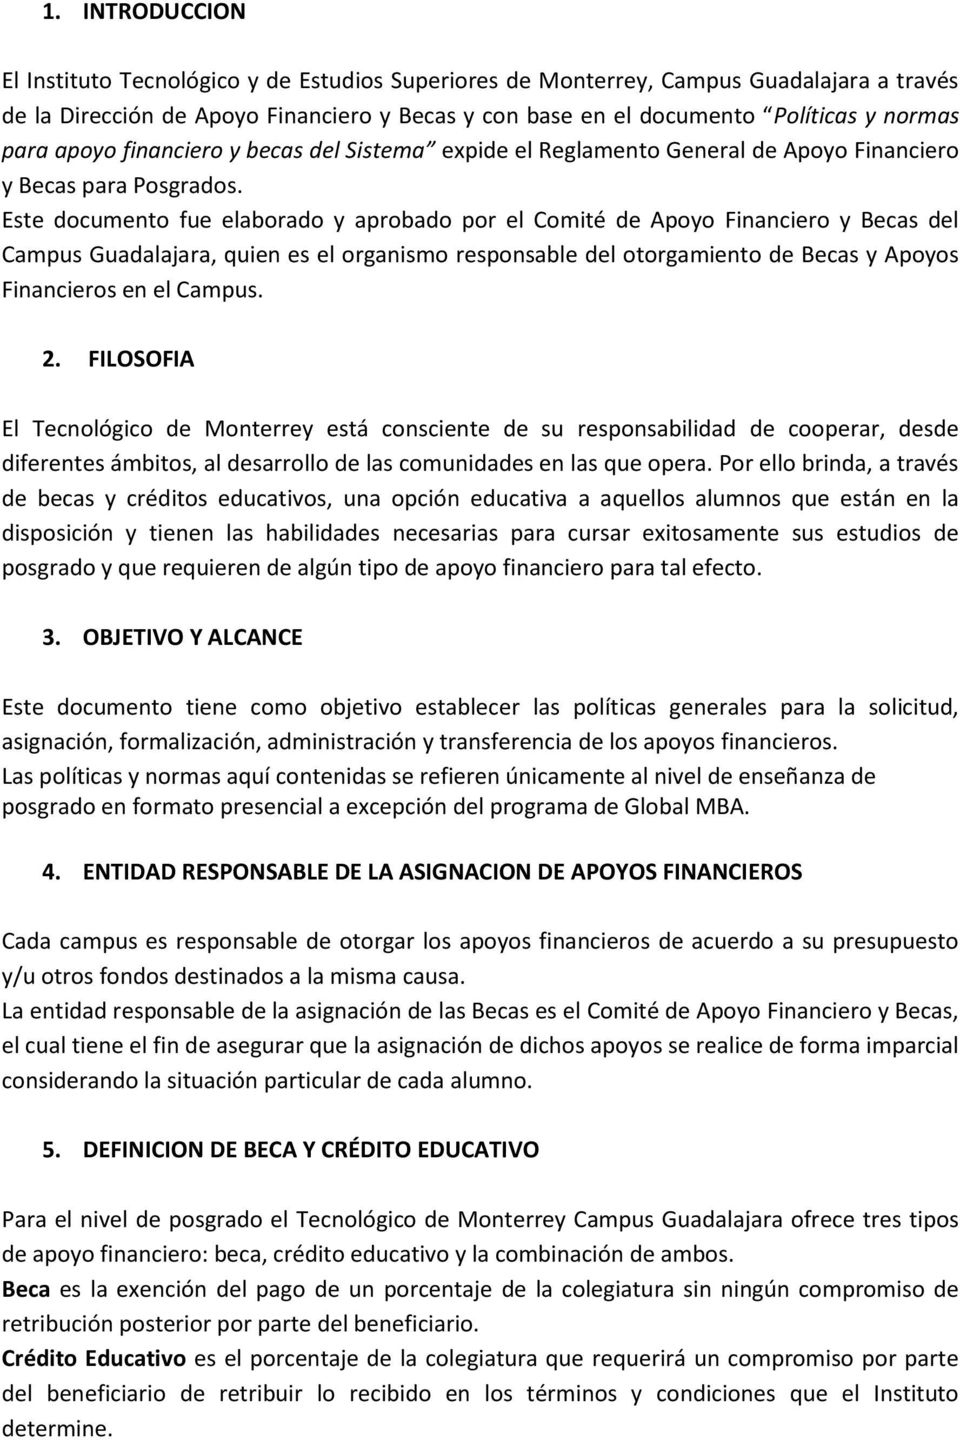 Este documento fue elaborado y aprobado por el Comité de Apoyo Financiero y Becas del Campus Guadalajara, quien es el organismo responsable del otorgamiento de Becas y Apoyos Financieros en el Campus.